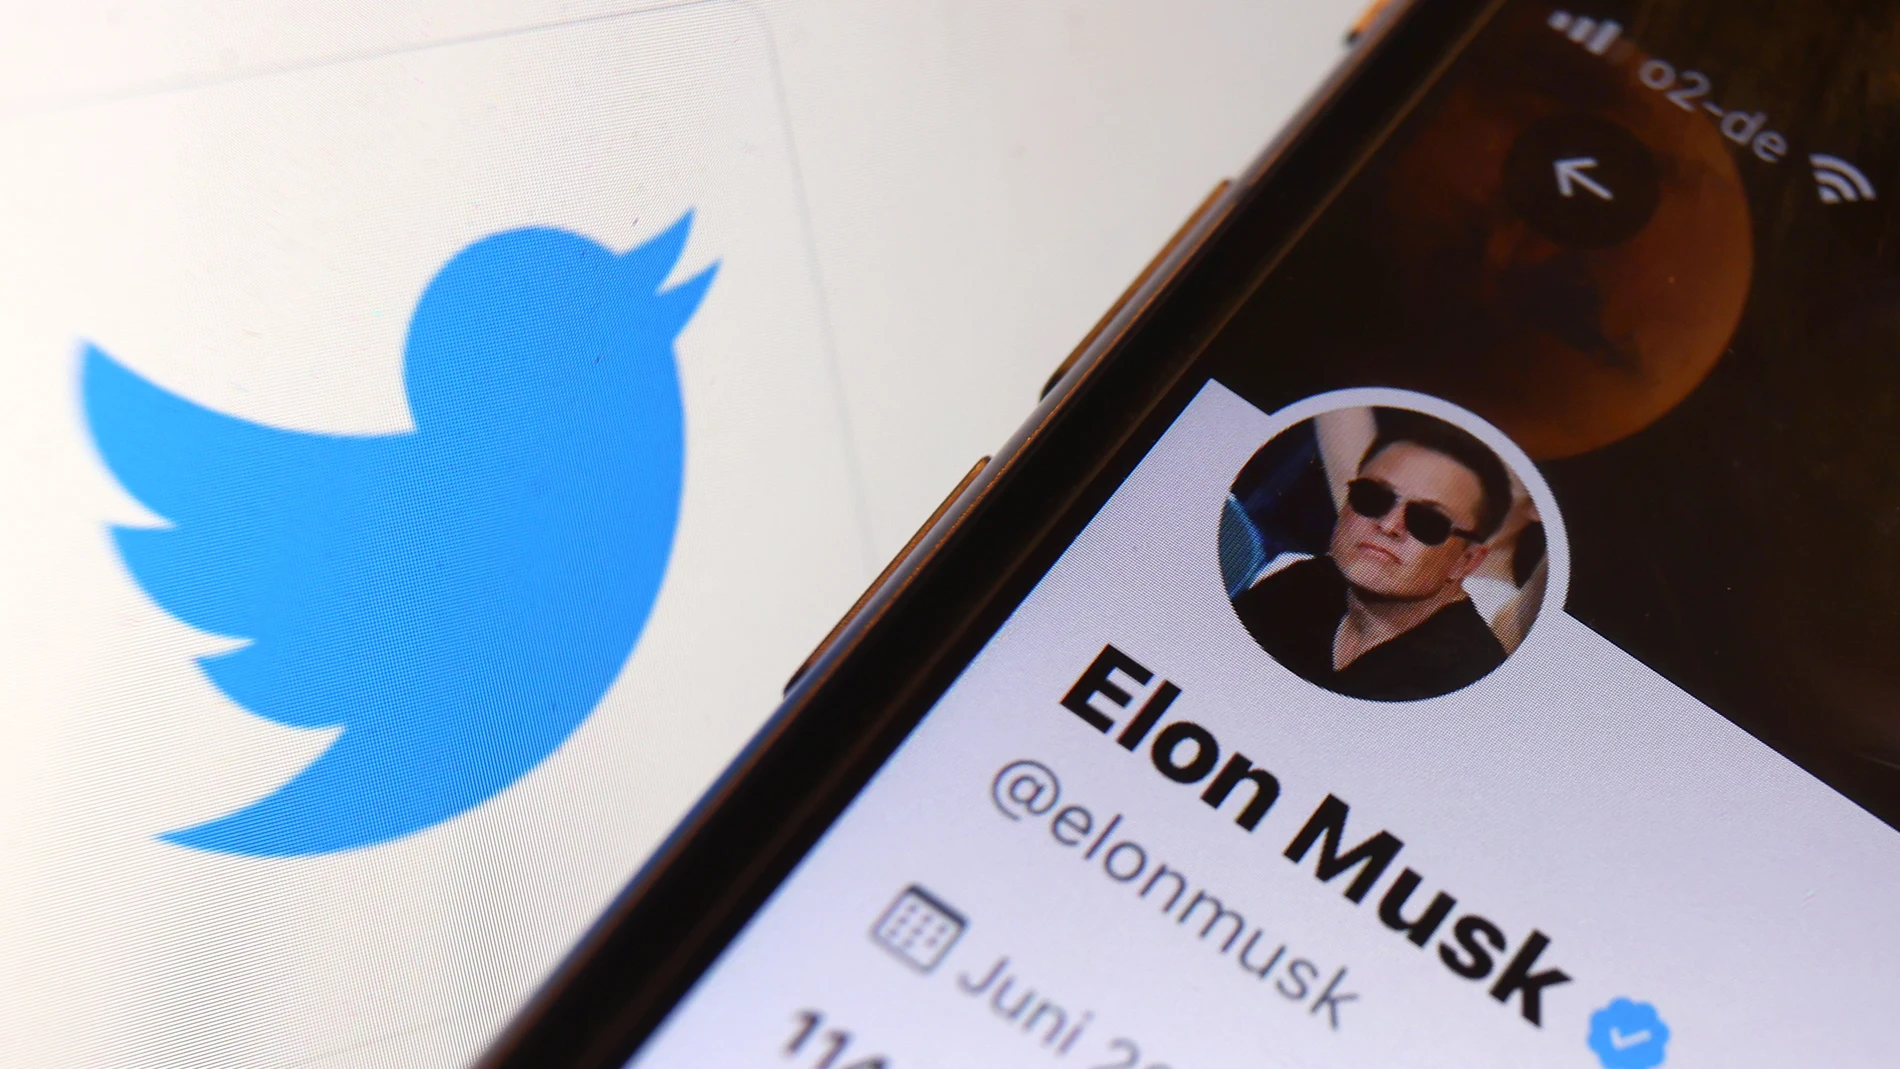 El empresario Elon Musk anunció el pasado abril la compra de Twitter por 44.000 millones de dólares